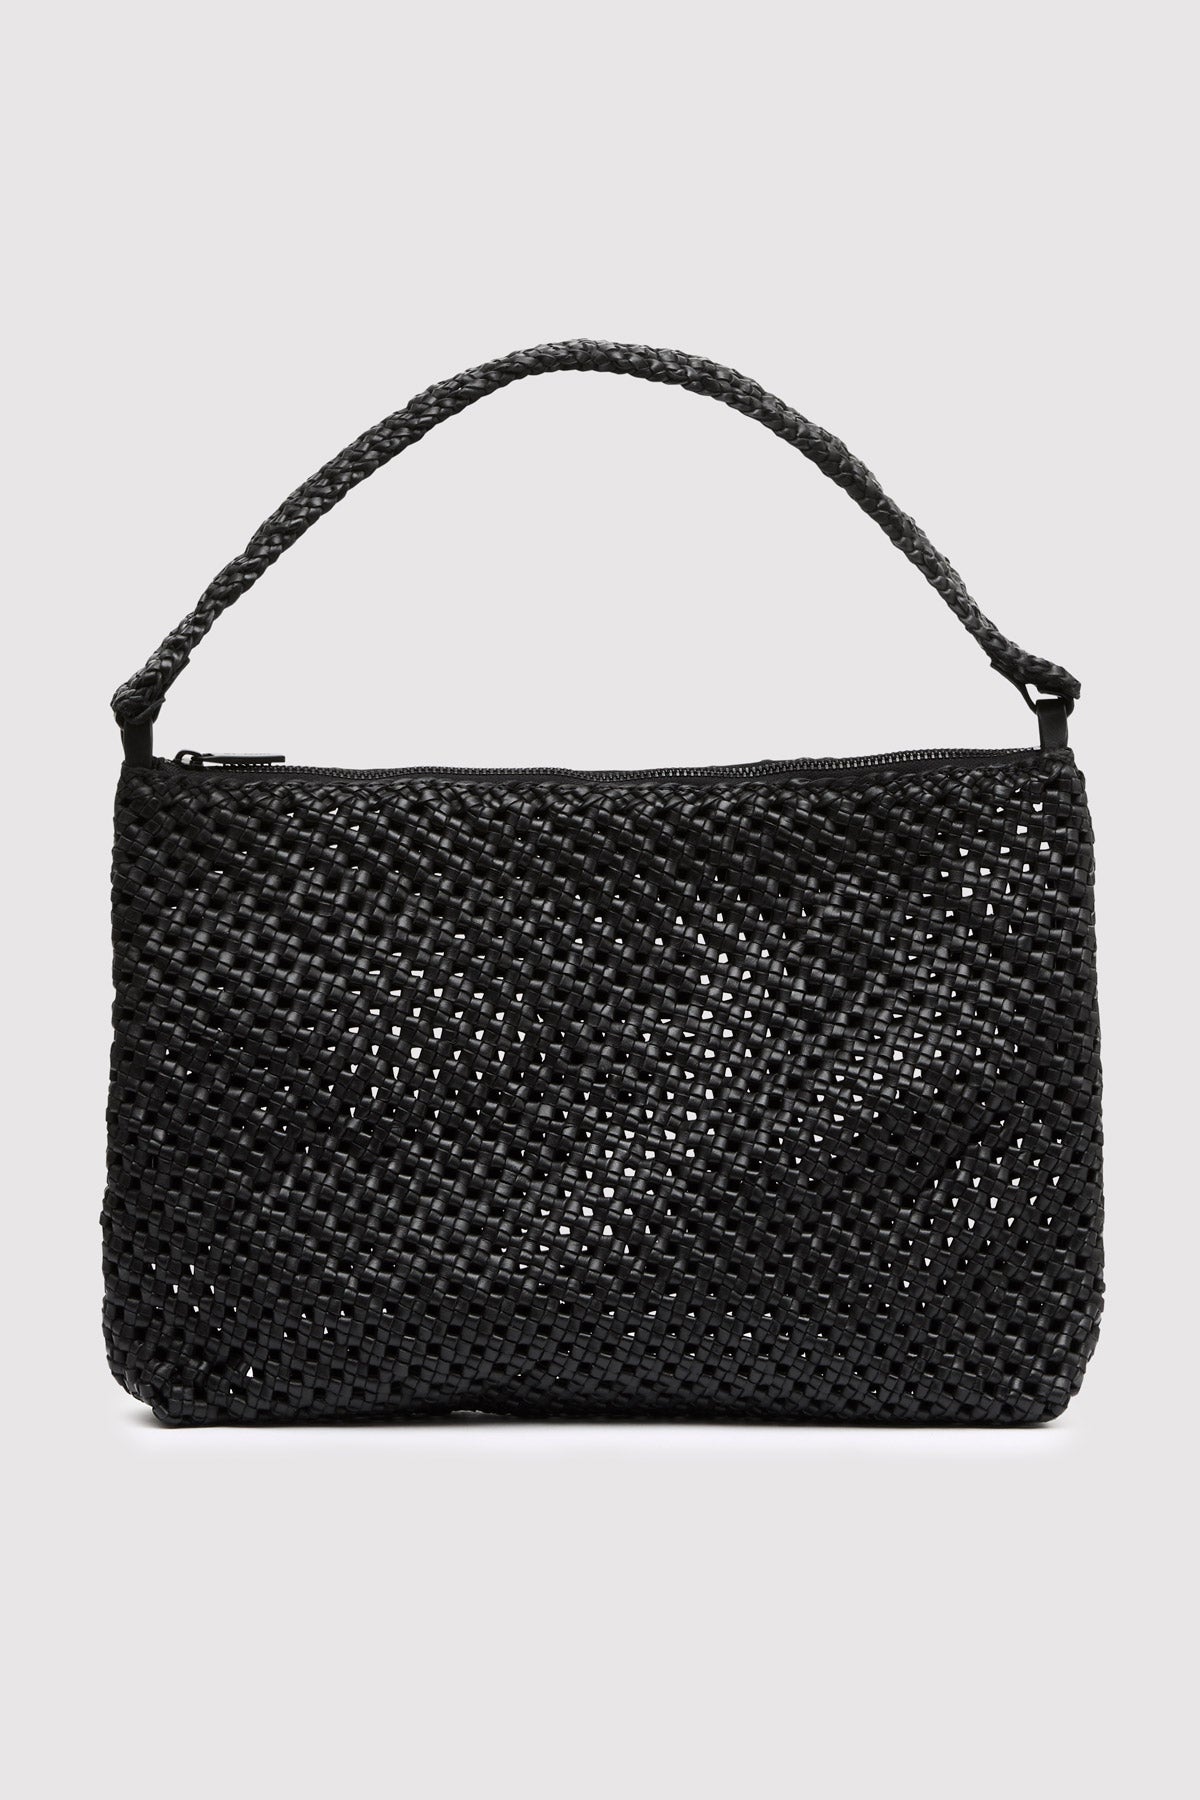 Macrame Shoulder Bag - Black